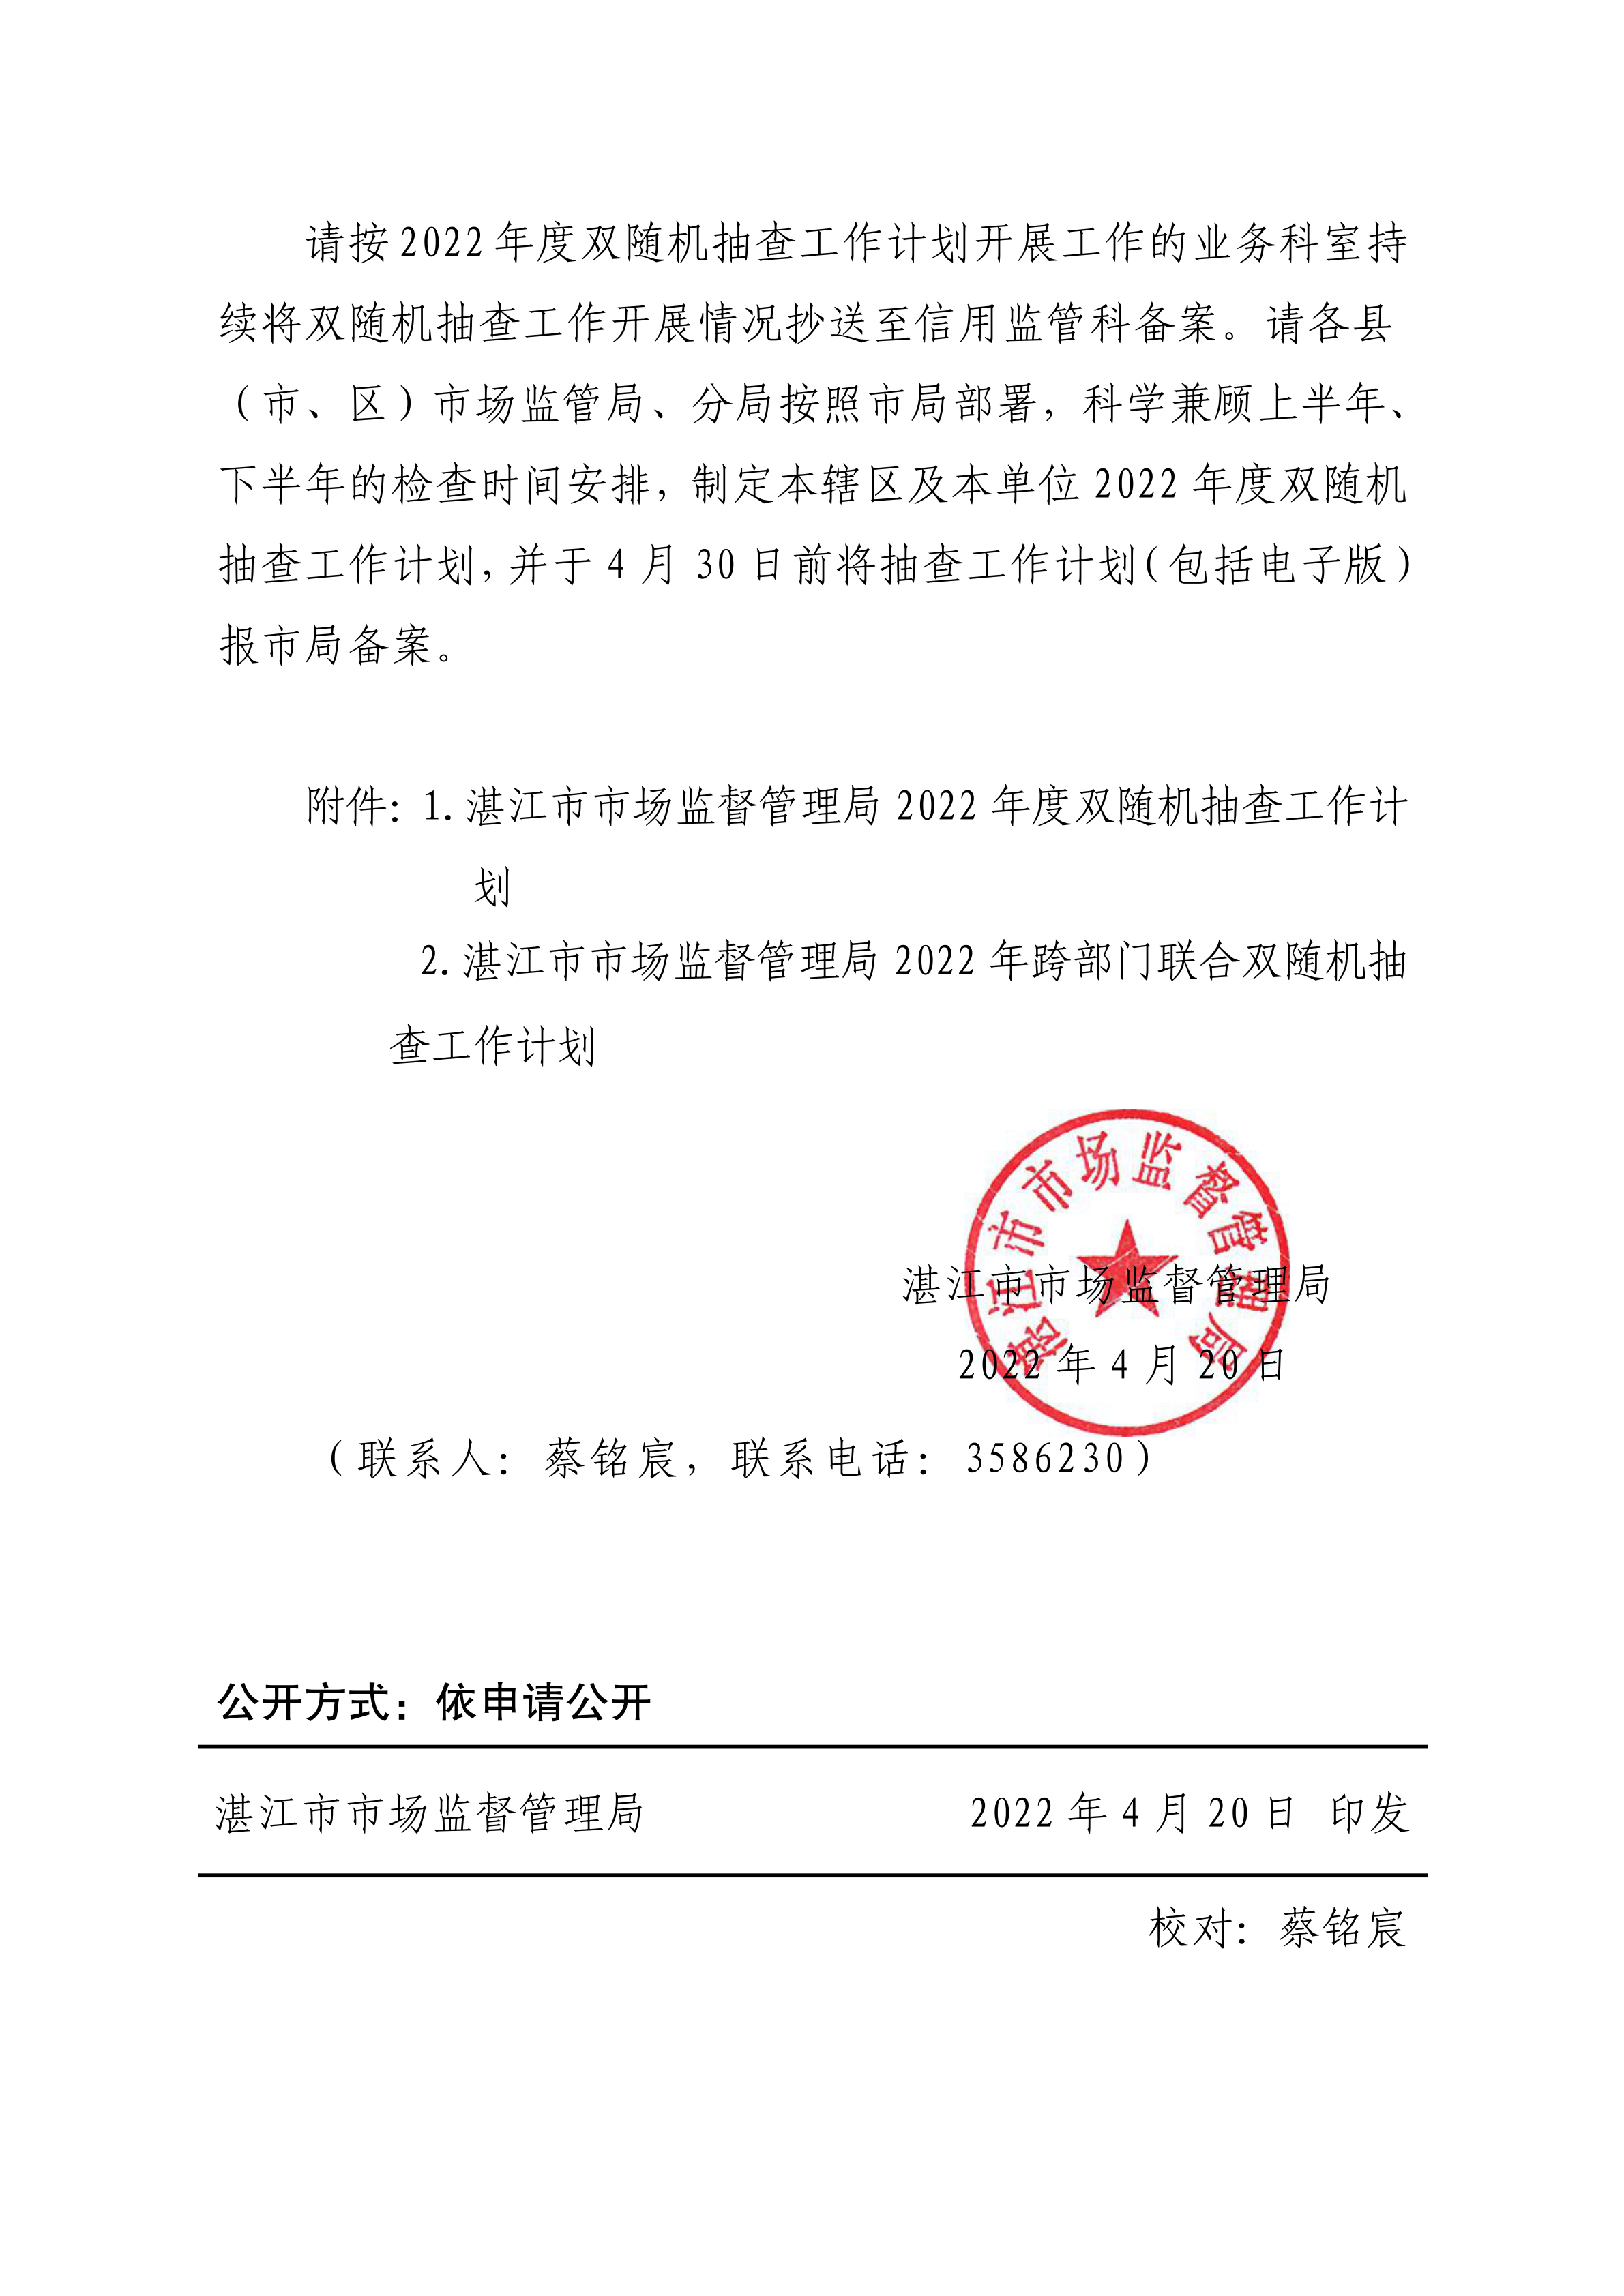 湛江市市场监督管理局关于印发2022年度双随机抽查工作计划的通知_01.png